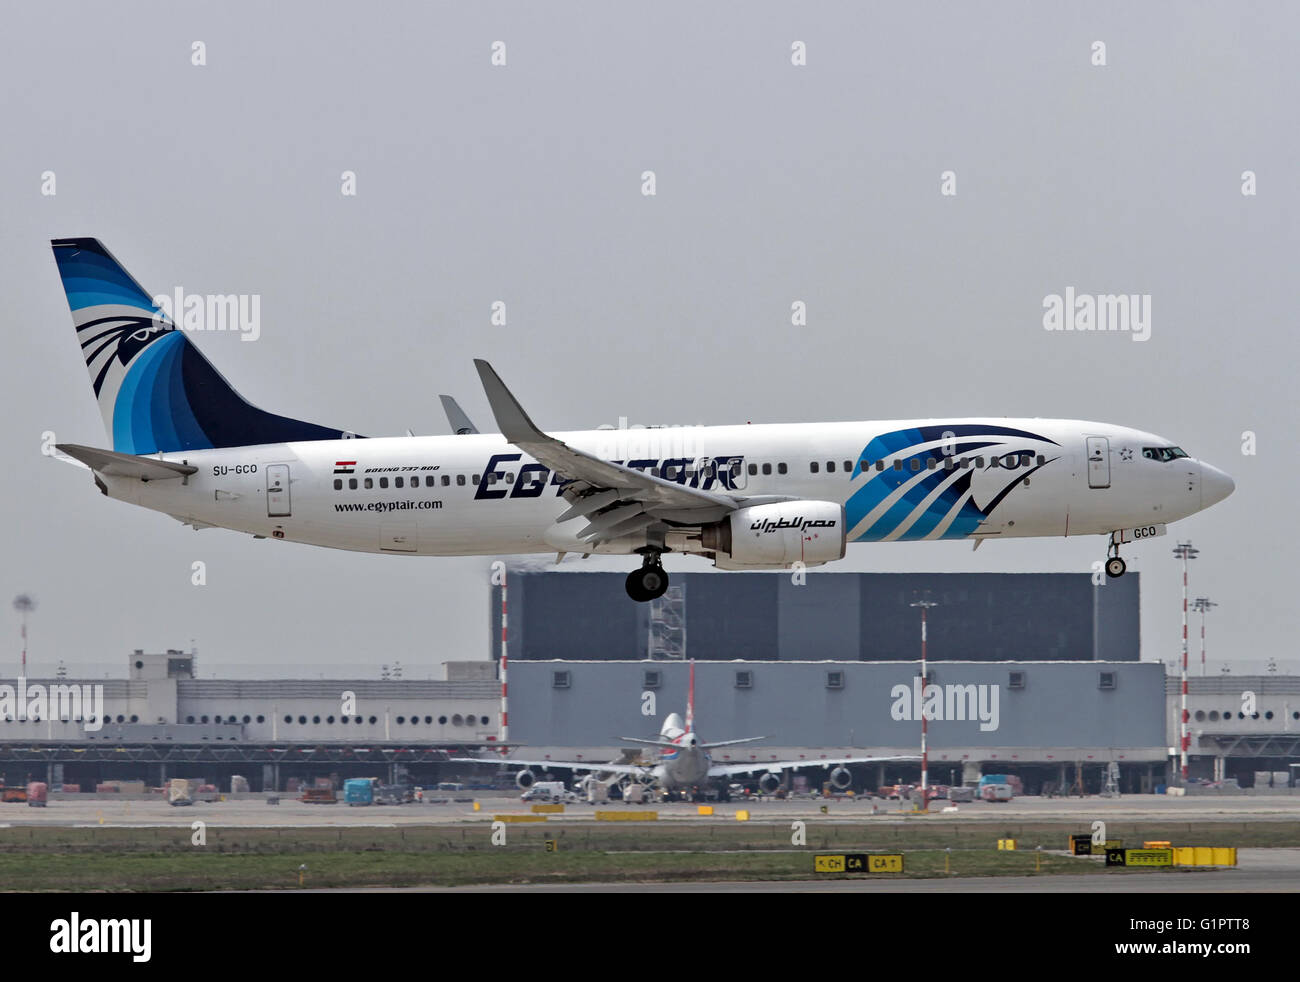 Egyptair Boeing 737 Next Gen, at Malpensa airport, Milan, Italy Stock Photo